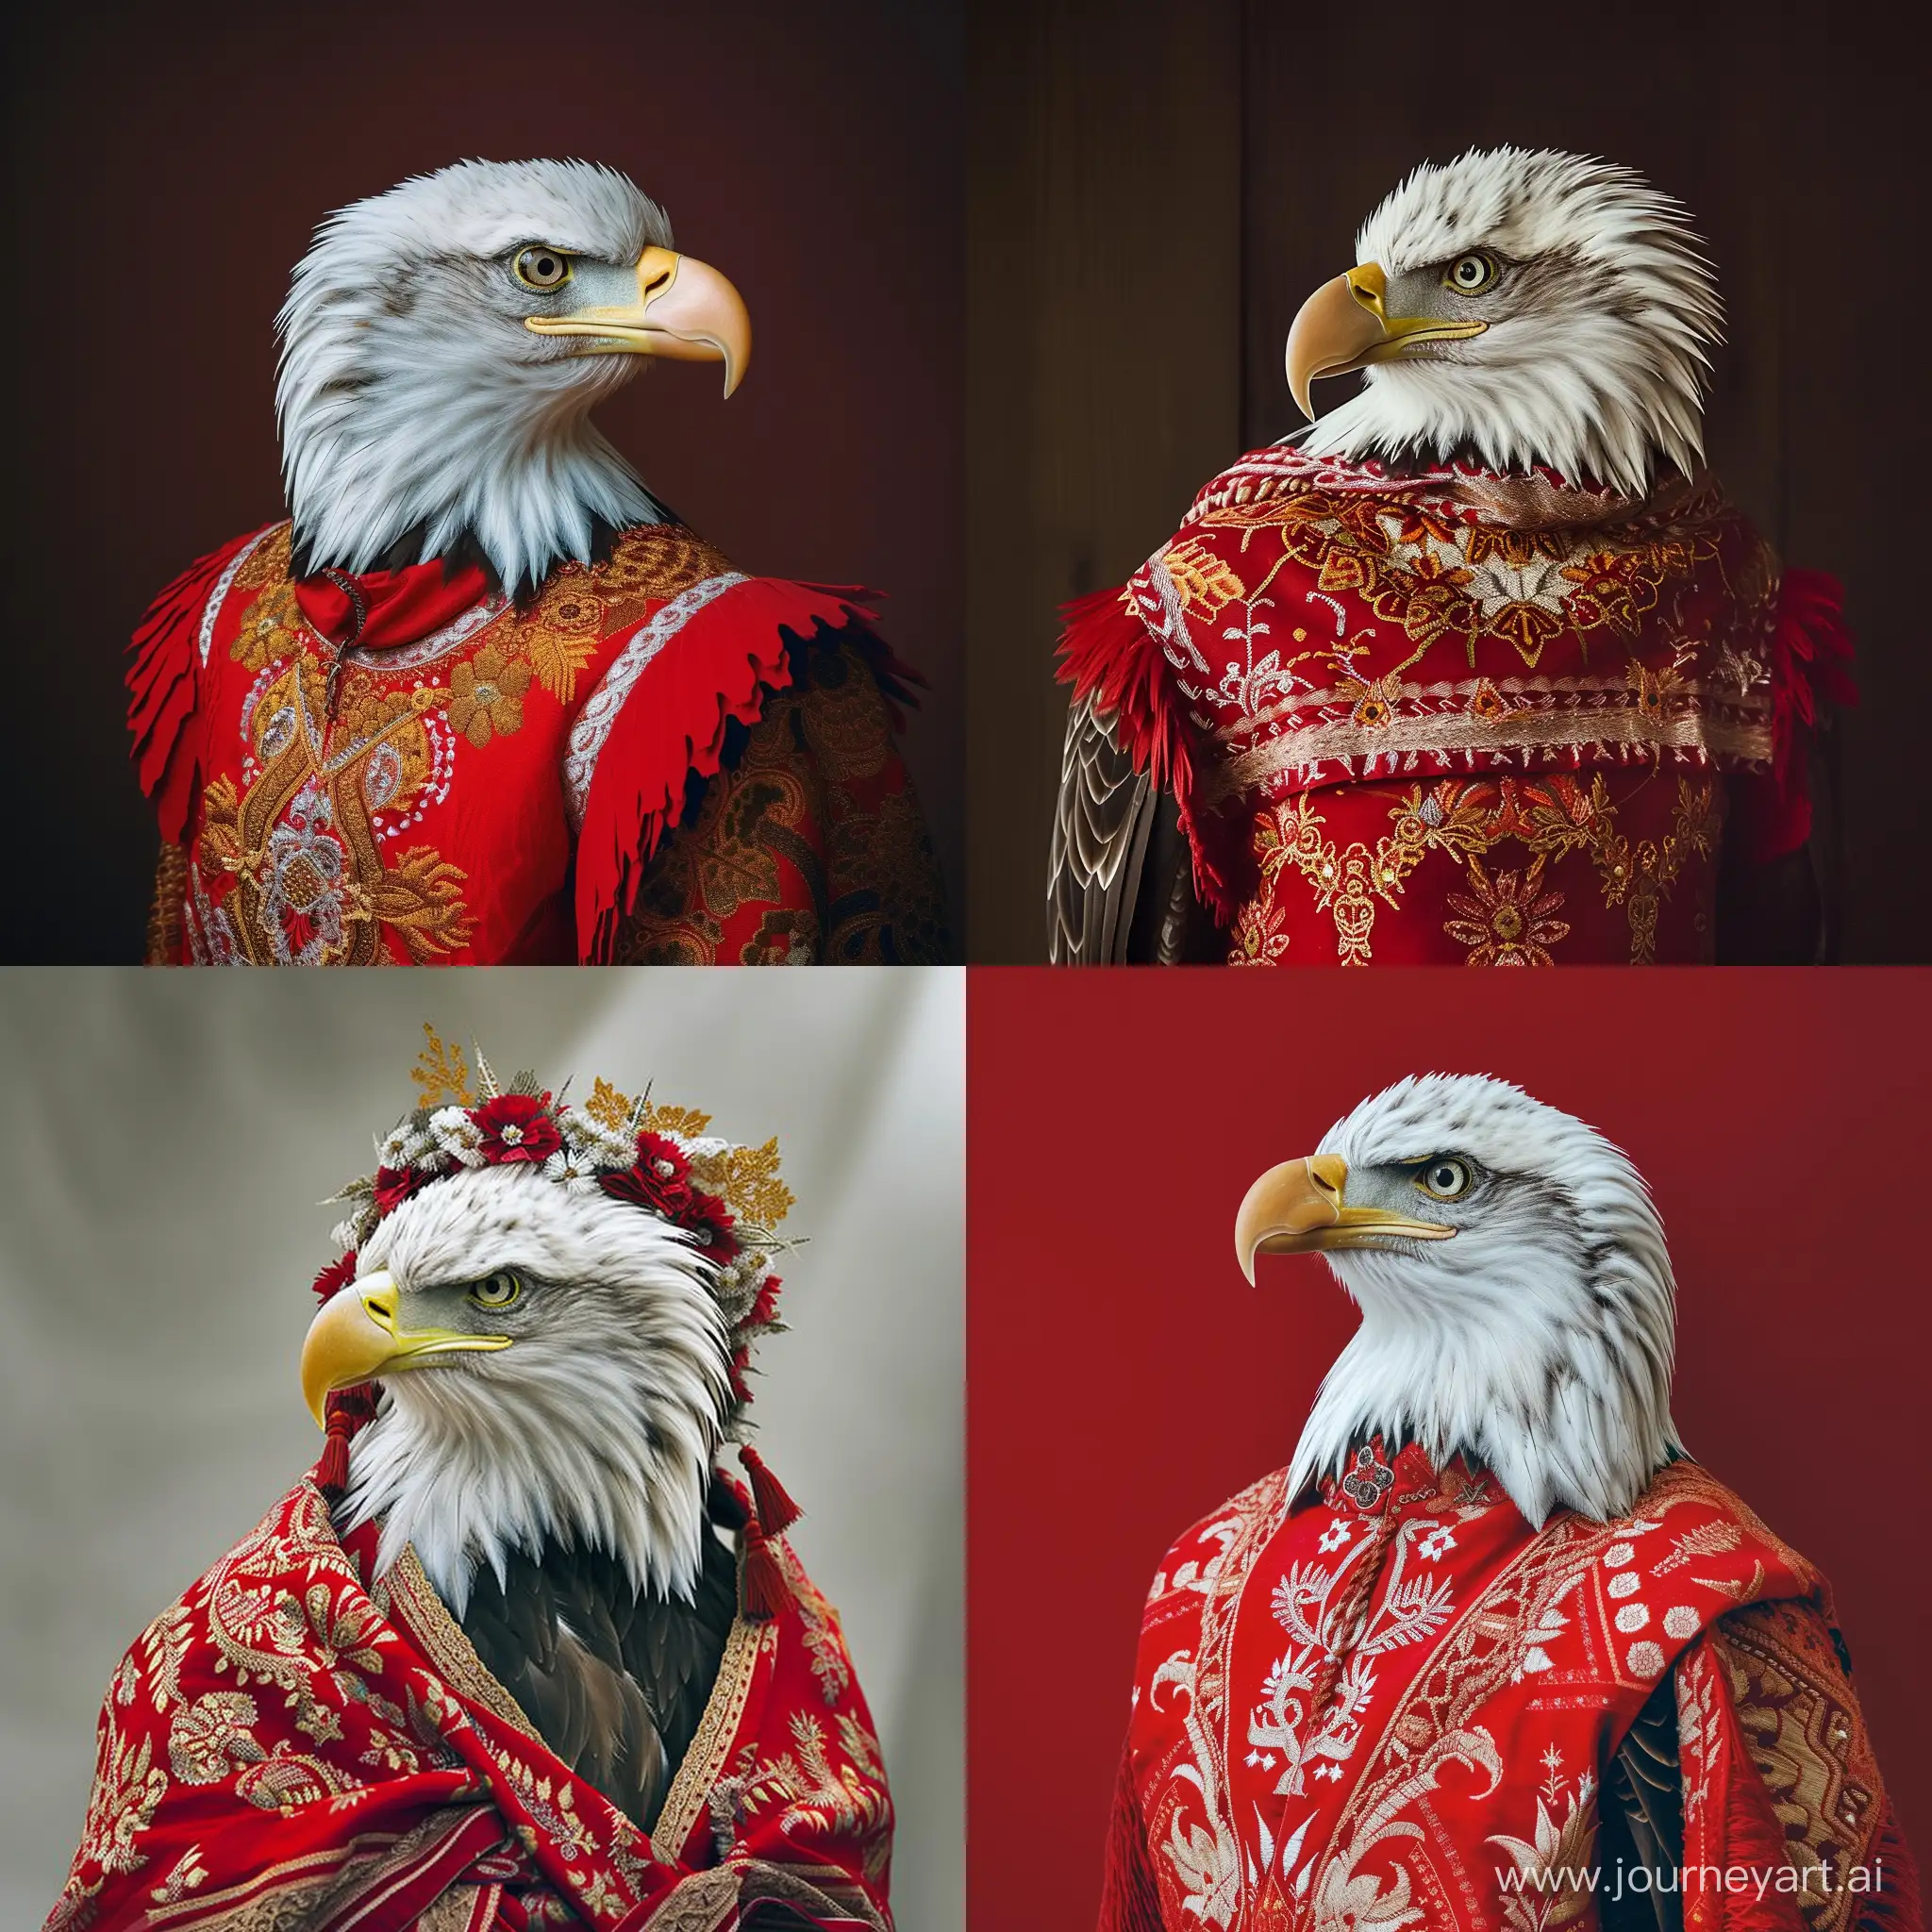 American-Bald-Eagle-in-Traditional-Slavic-Attire